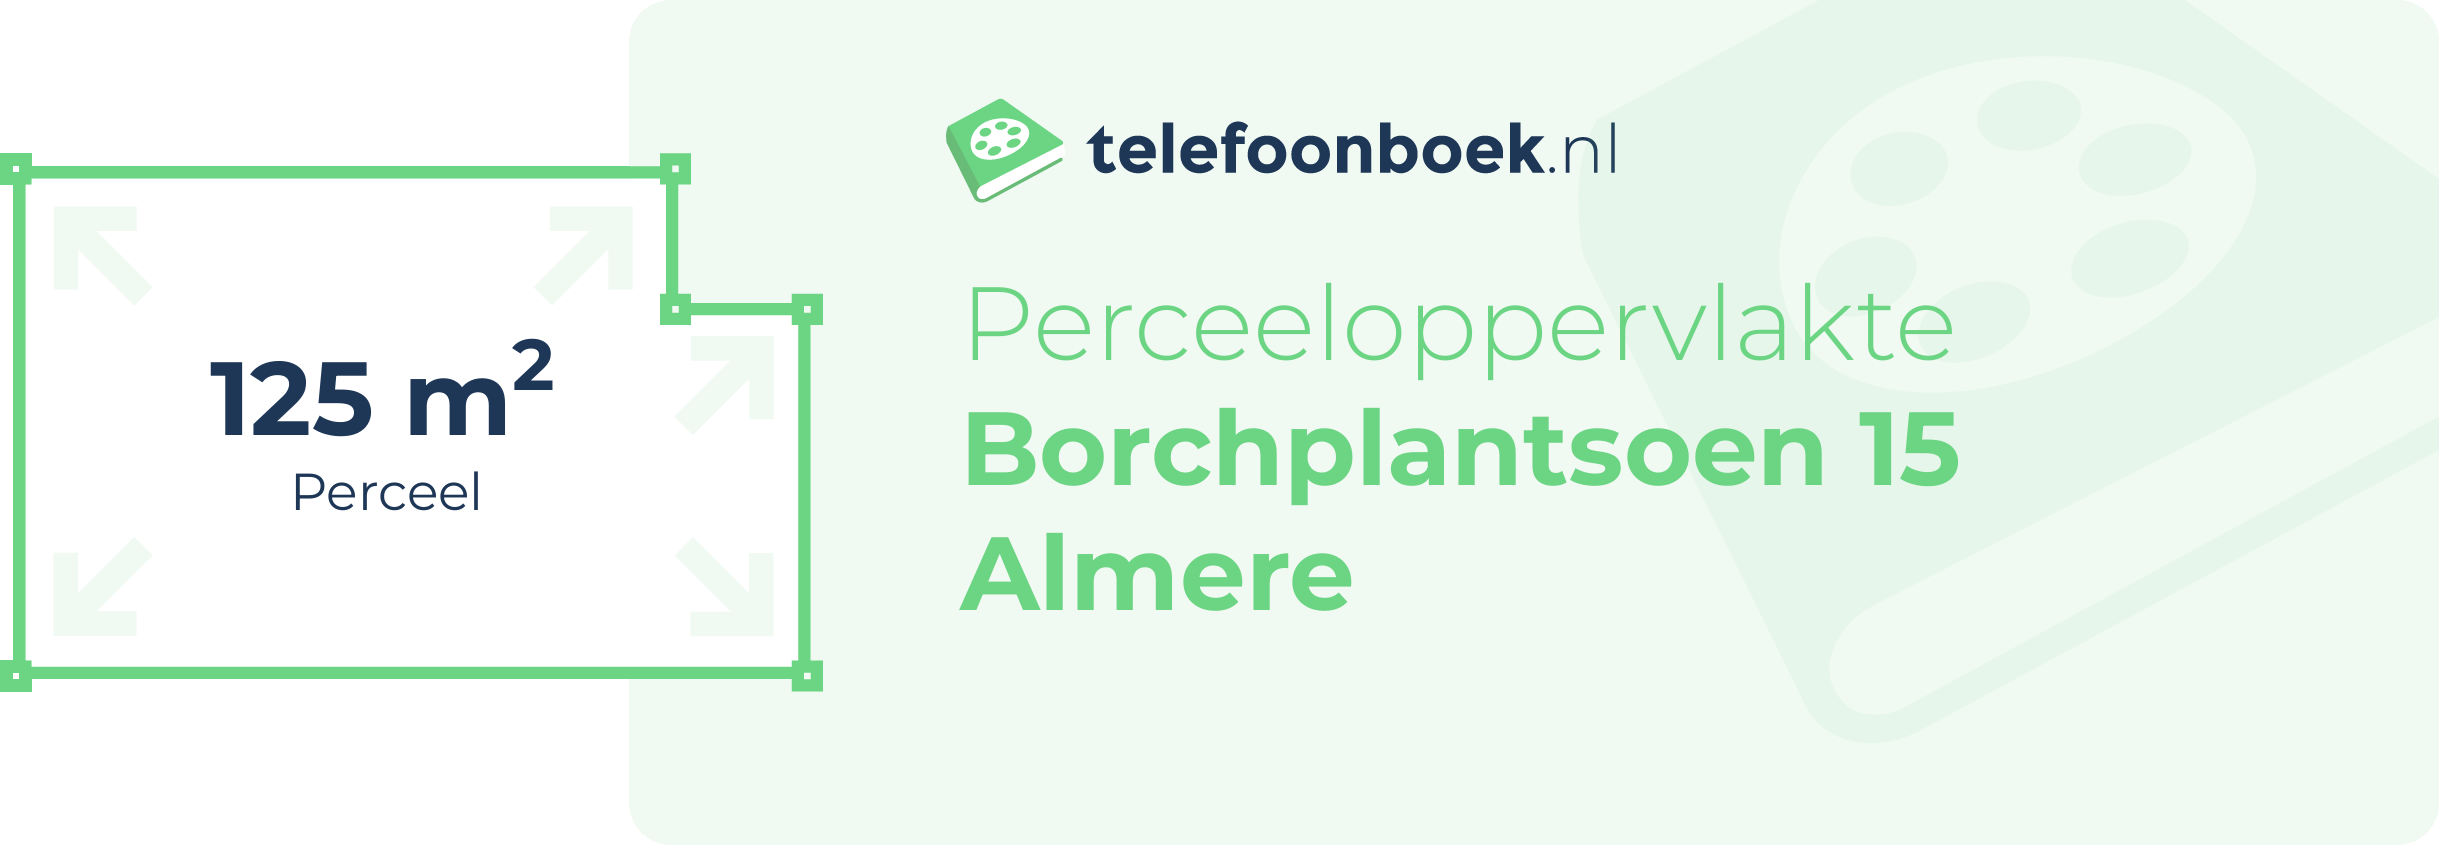 Perceeloppervlakte Borchplantsoen 15 Almere